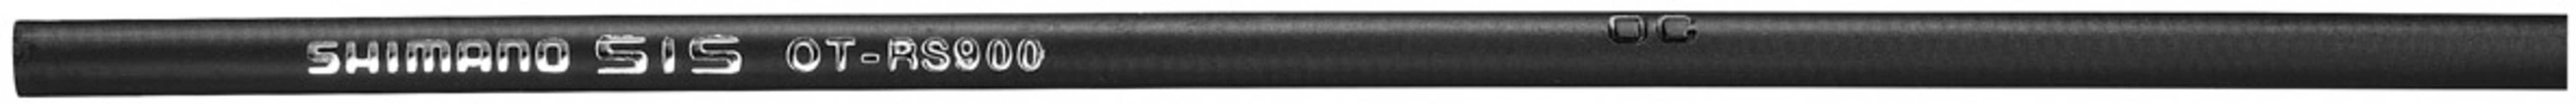 Växelvajerset Shimano Dura-Ace Rs900 svart från Shimano